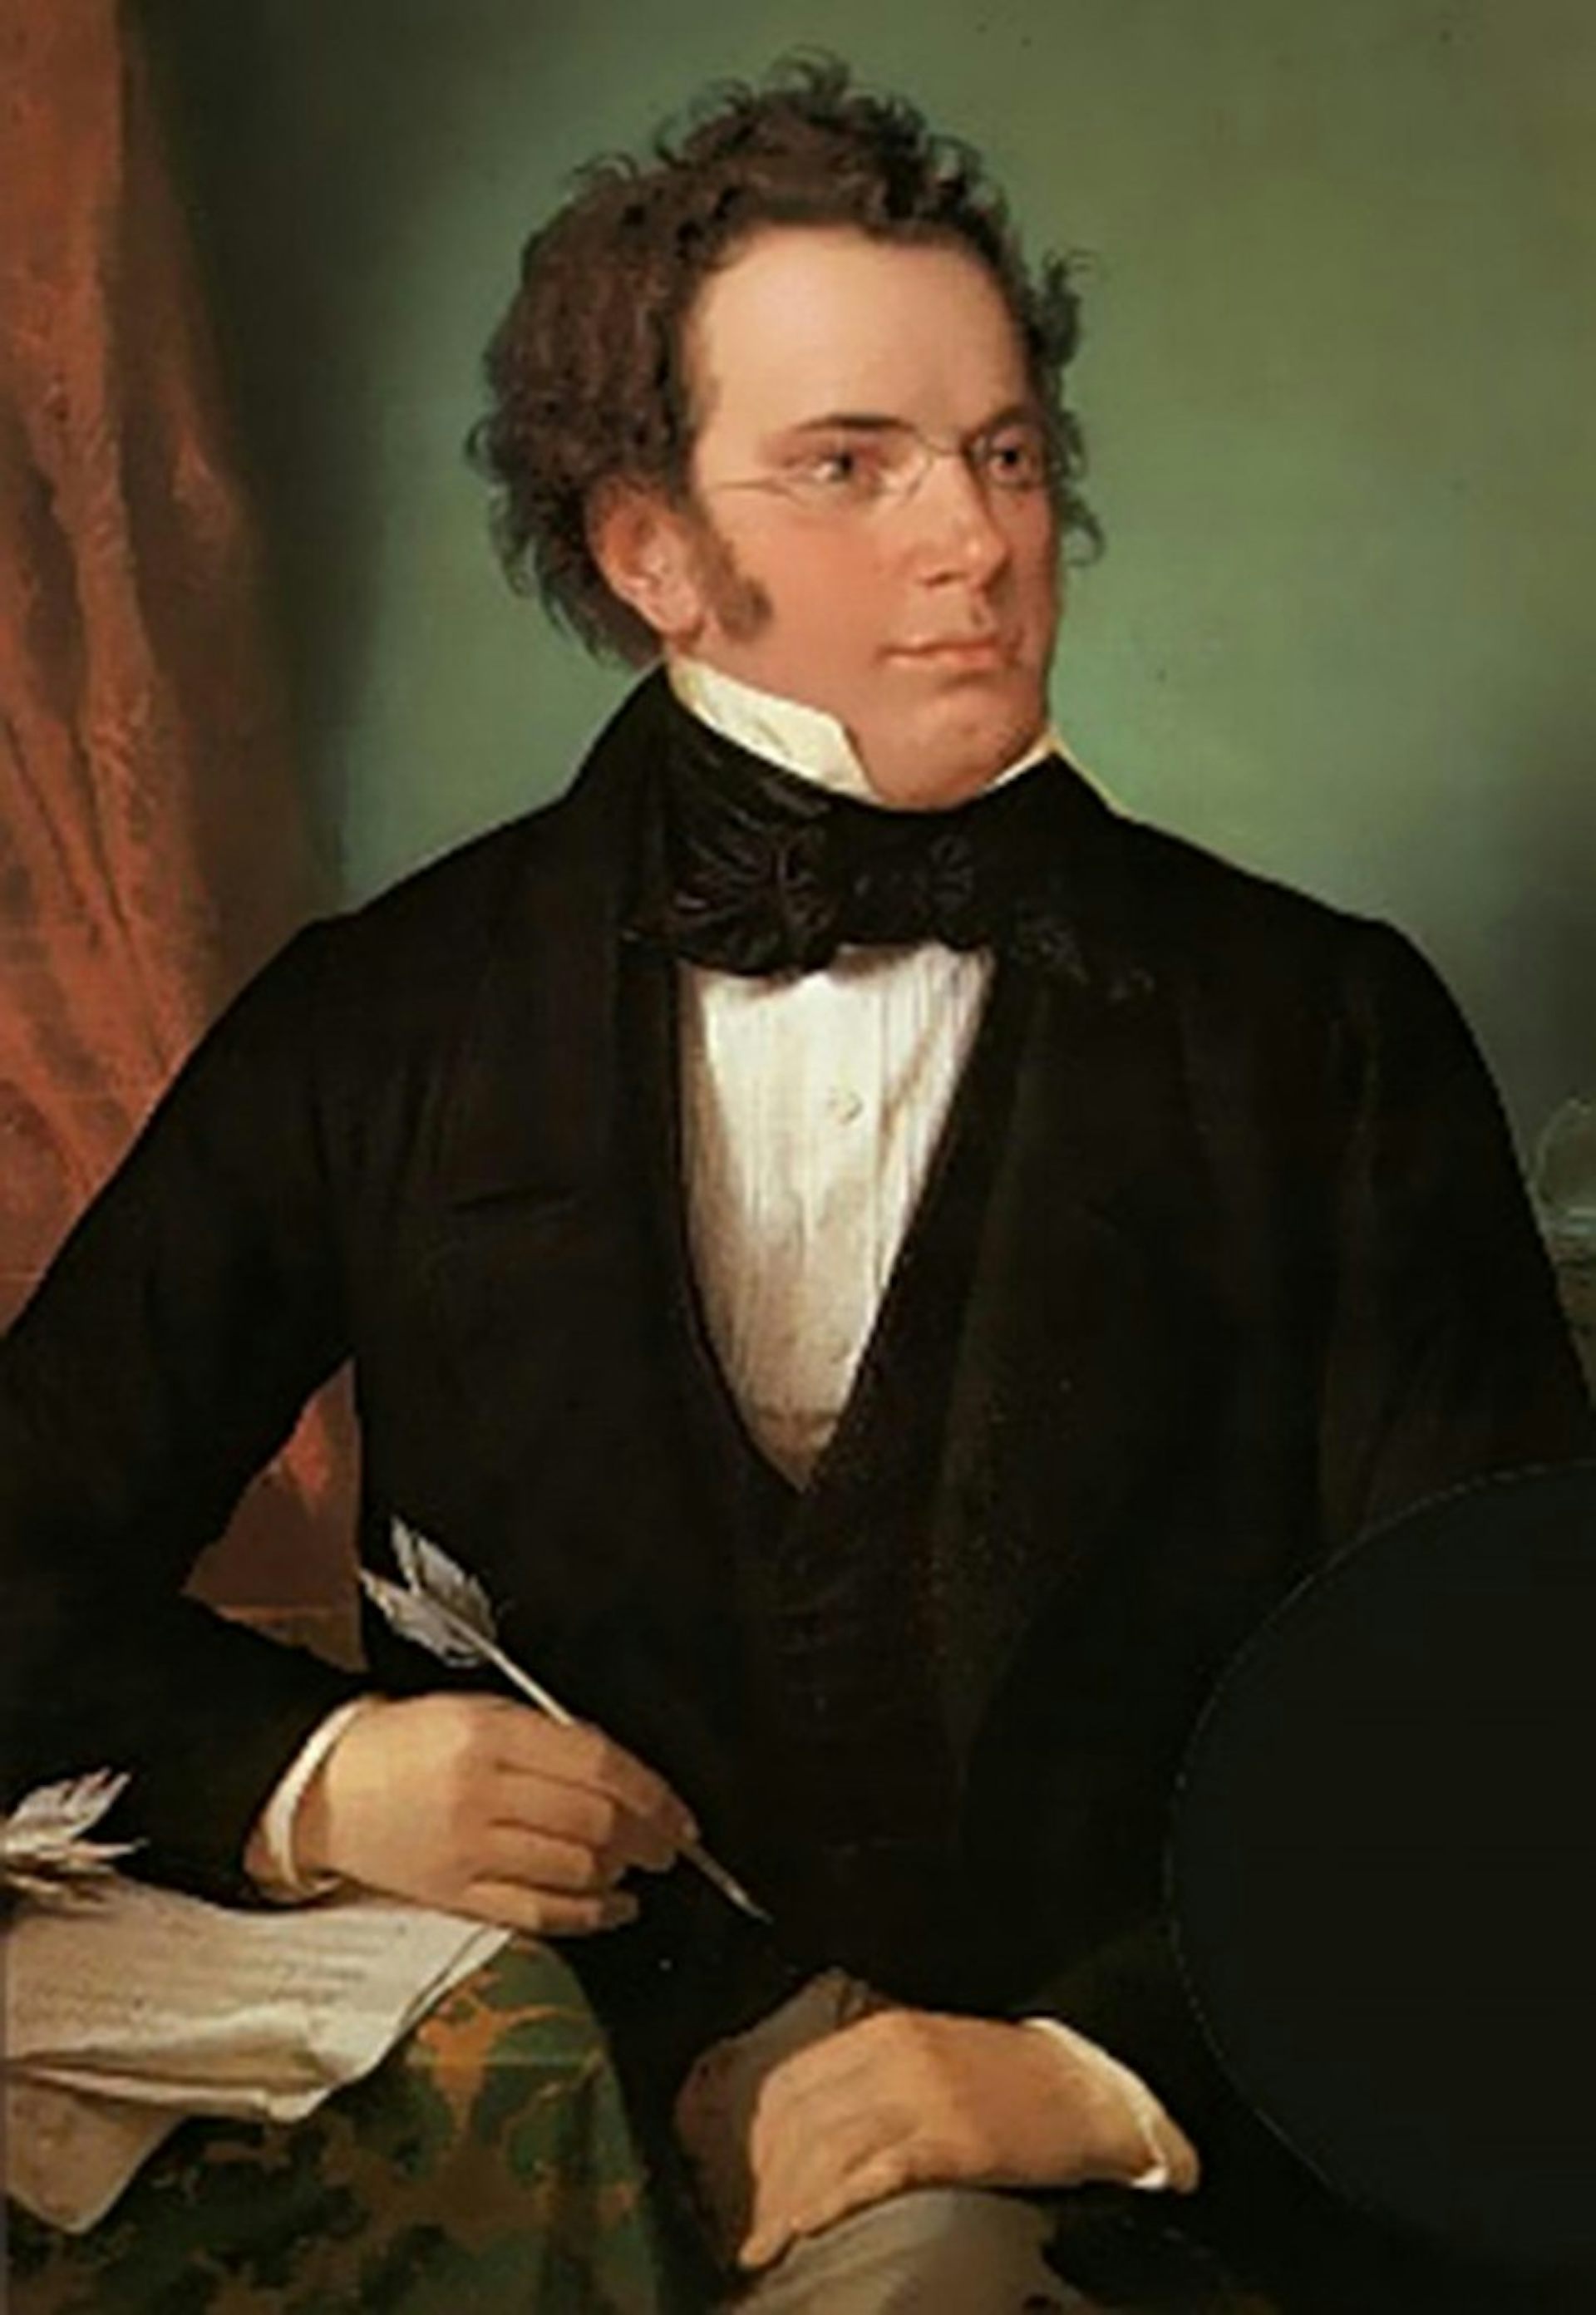 schubert compositions in 1827